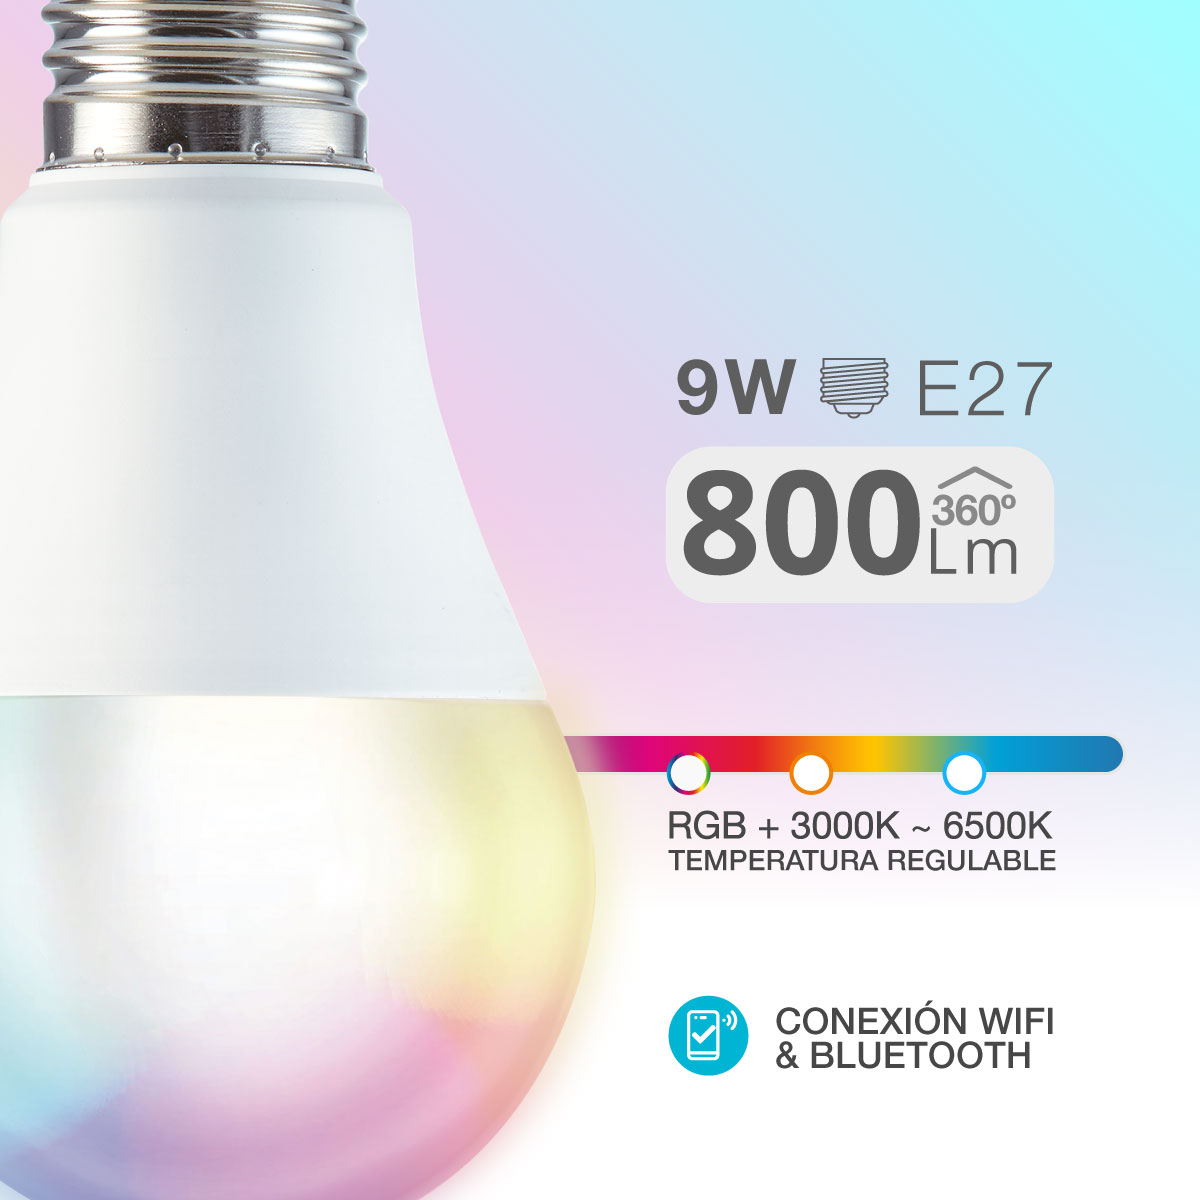 Bombilla LED Estándar Inteligente 9W Regulable en Intensidad y Temperatura